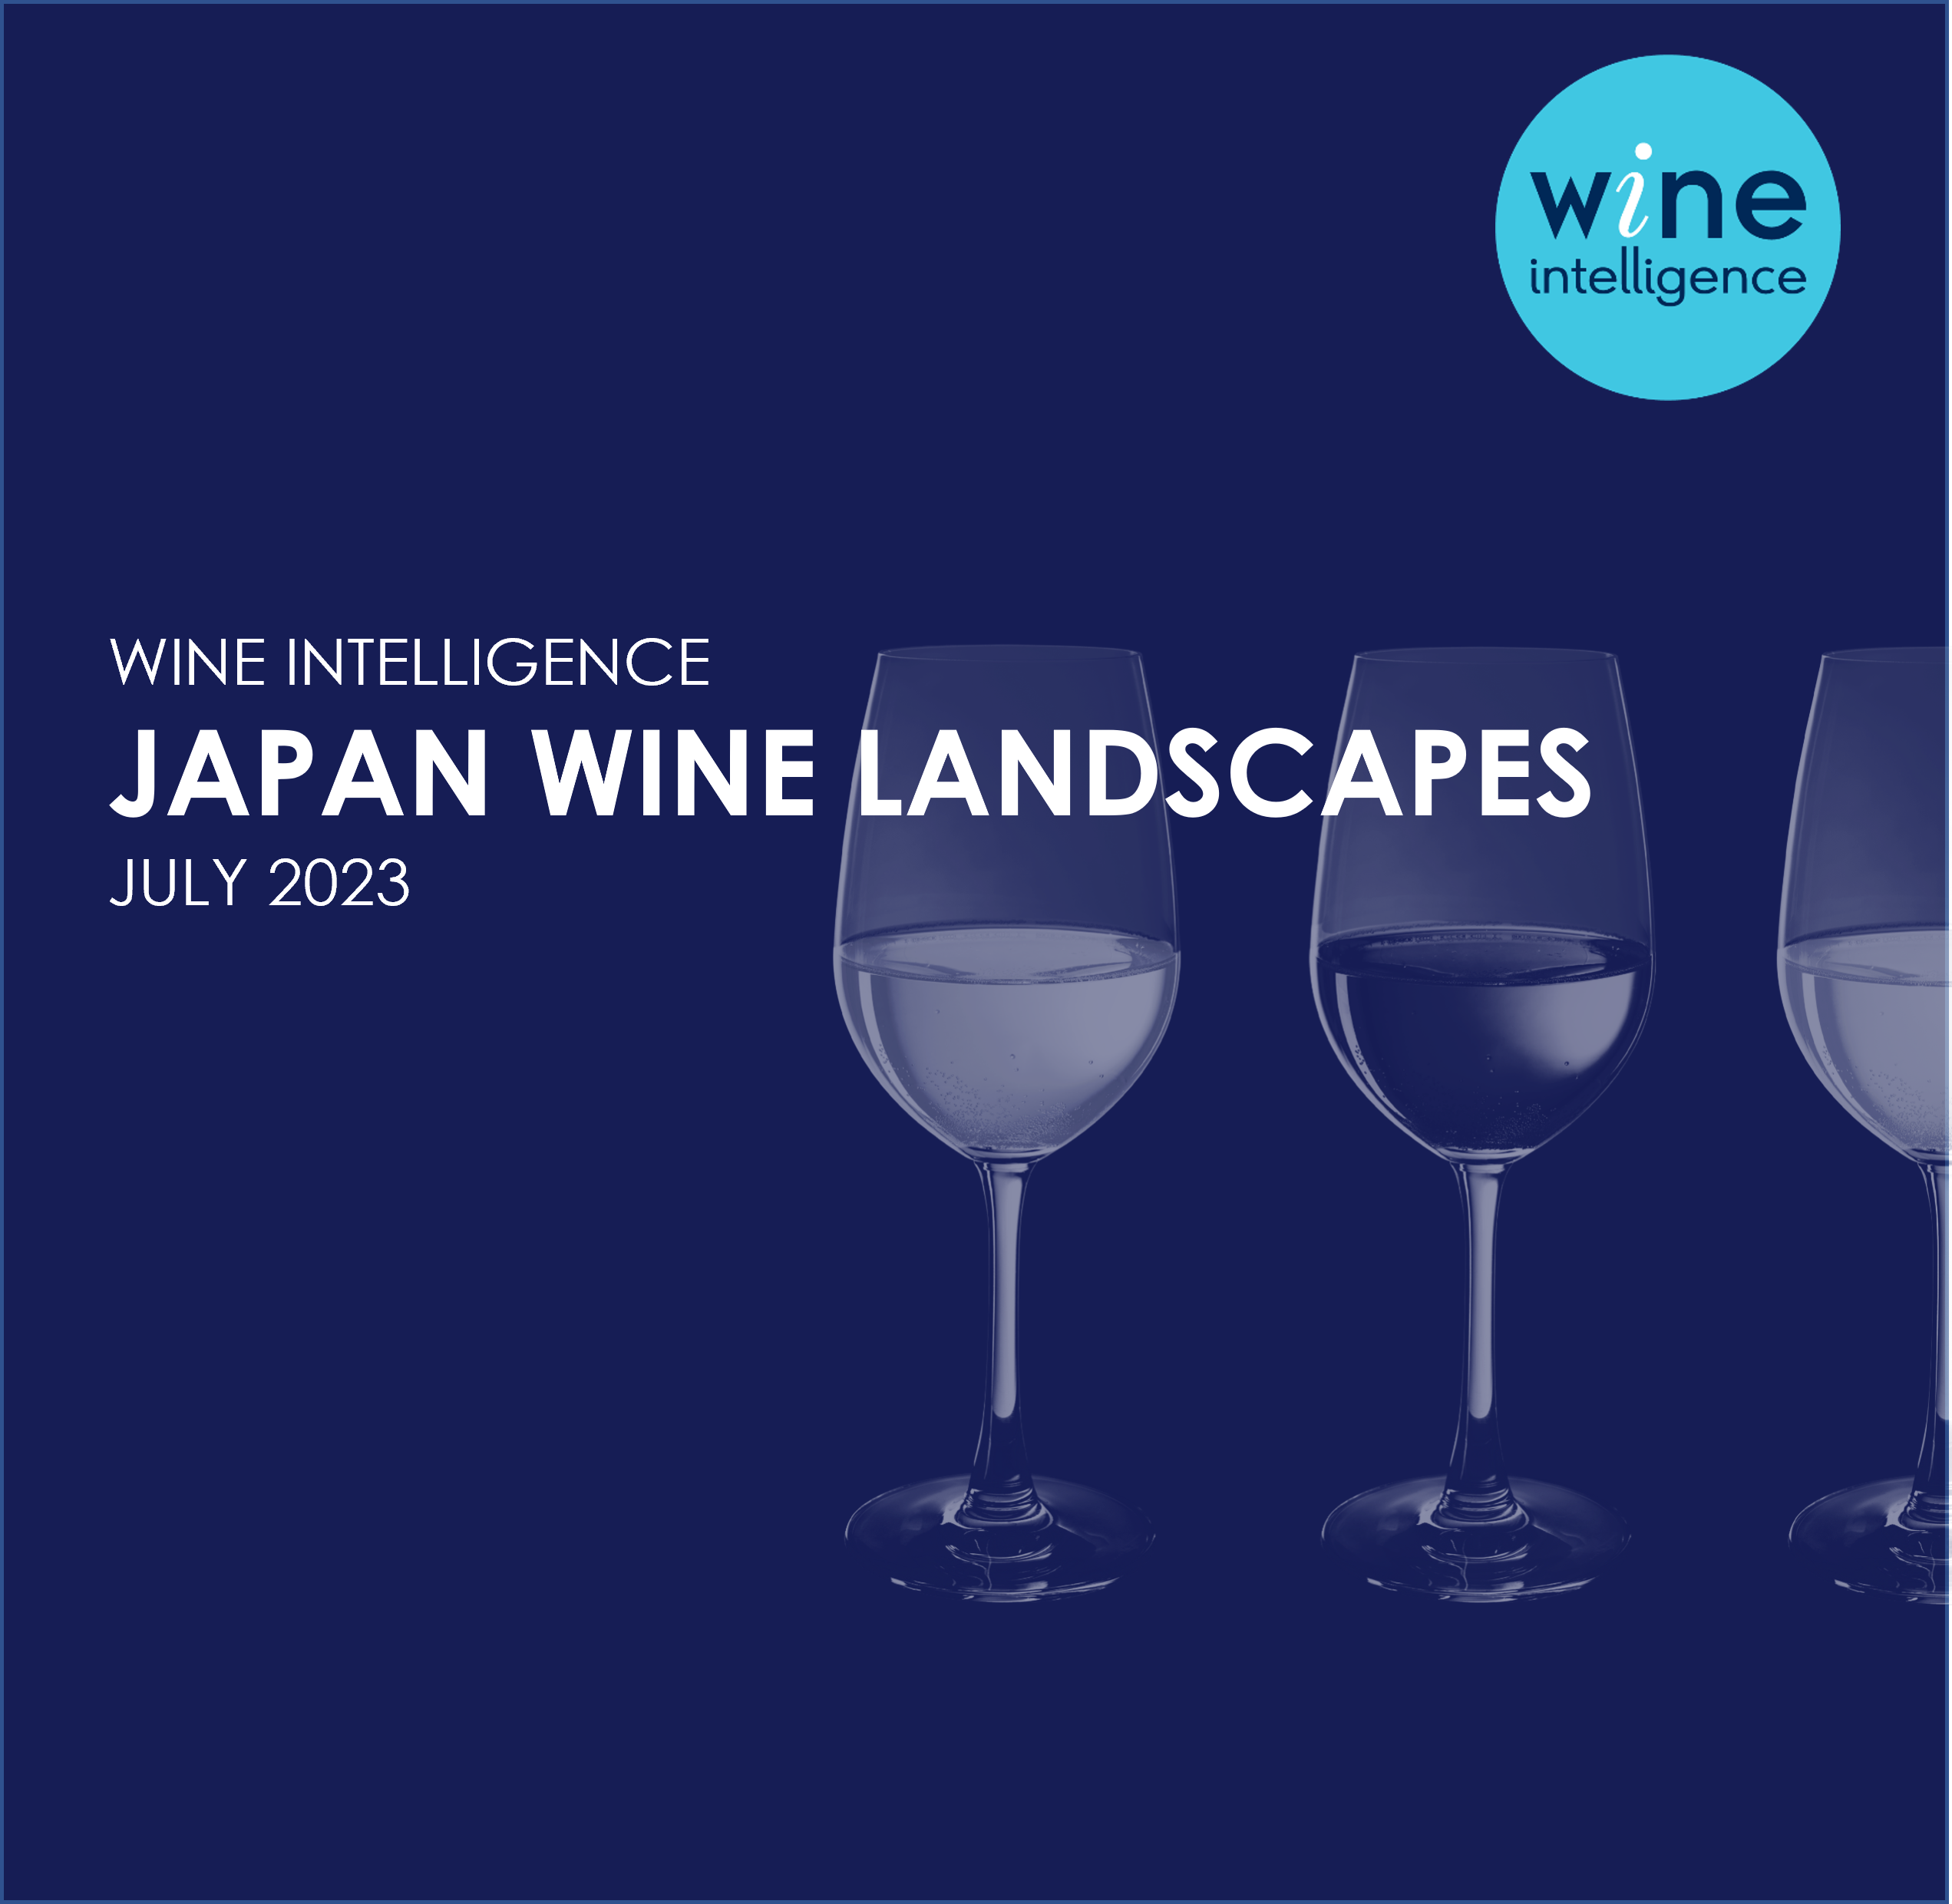 Japan Wine Landscapes 2023 - Japan Wine Landscapes Report 2023